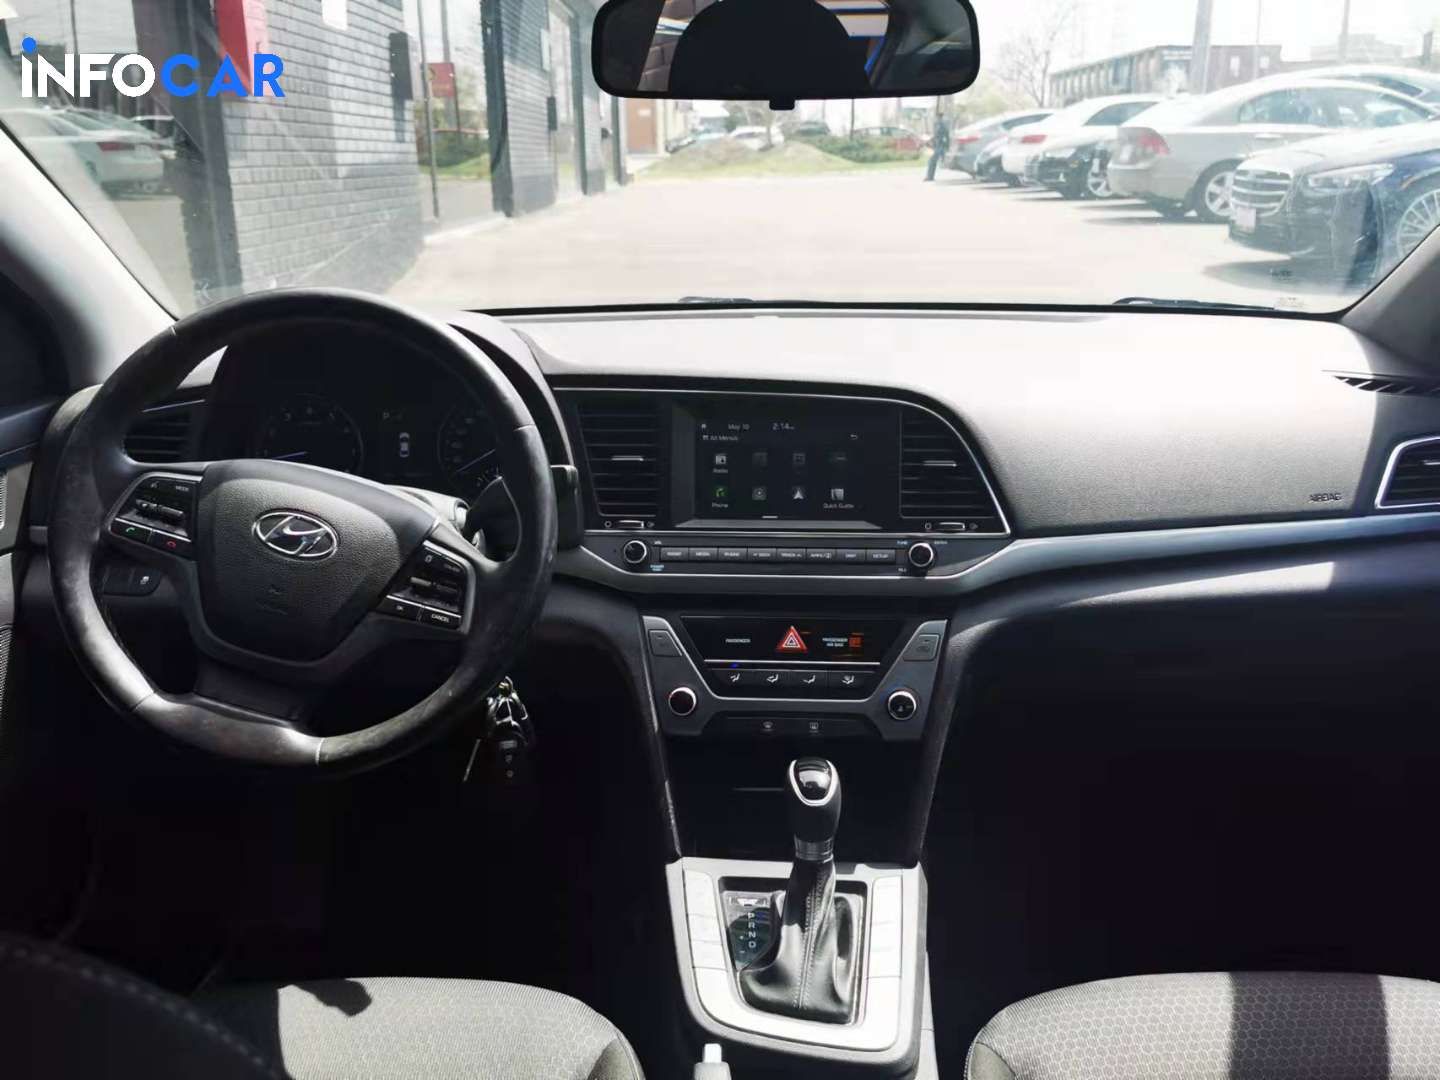 2017 Hyundai Elantra GL - INFOCAR - Toronto Auto Trading Platform